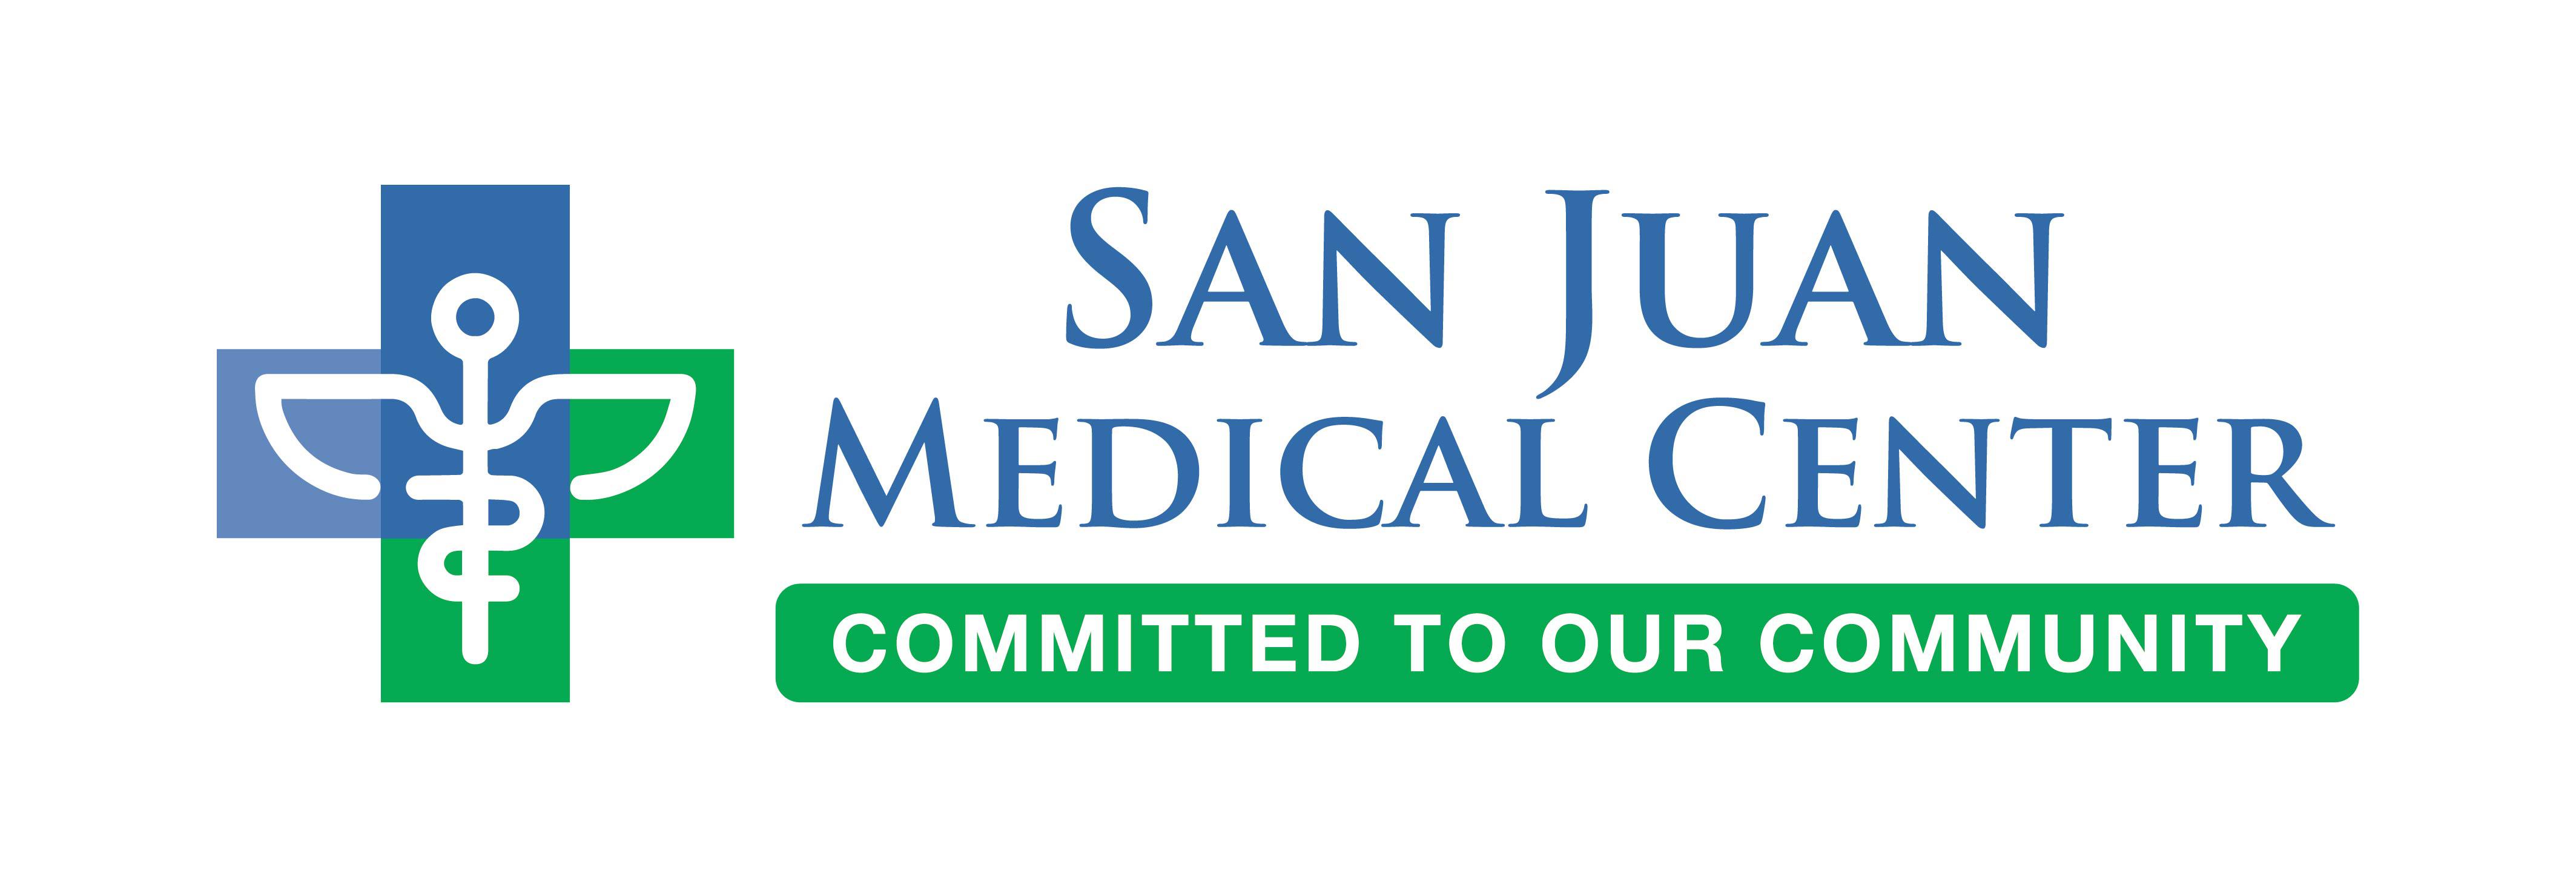 San Juan Medical Center Logo